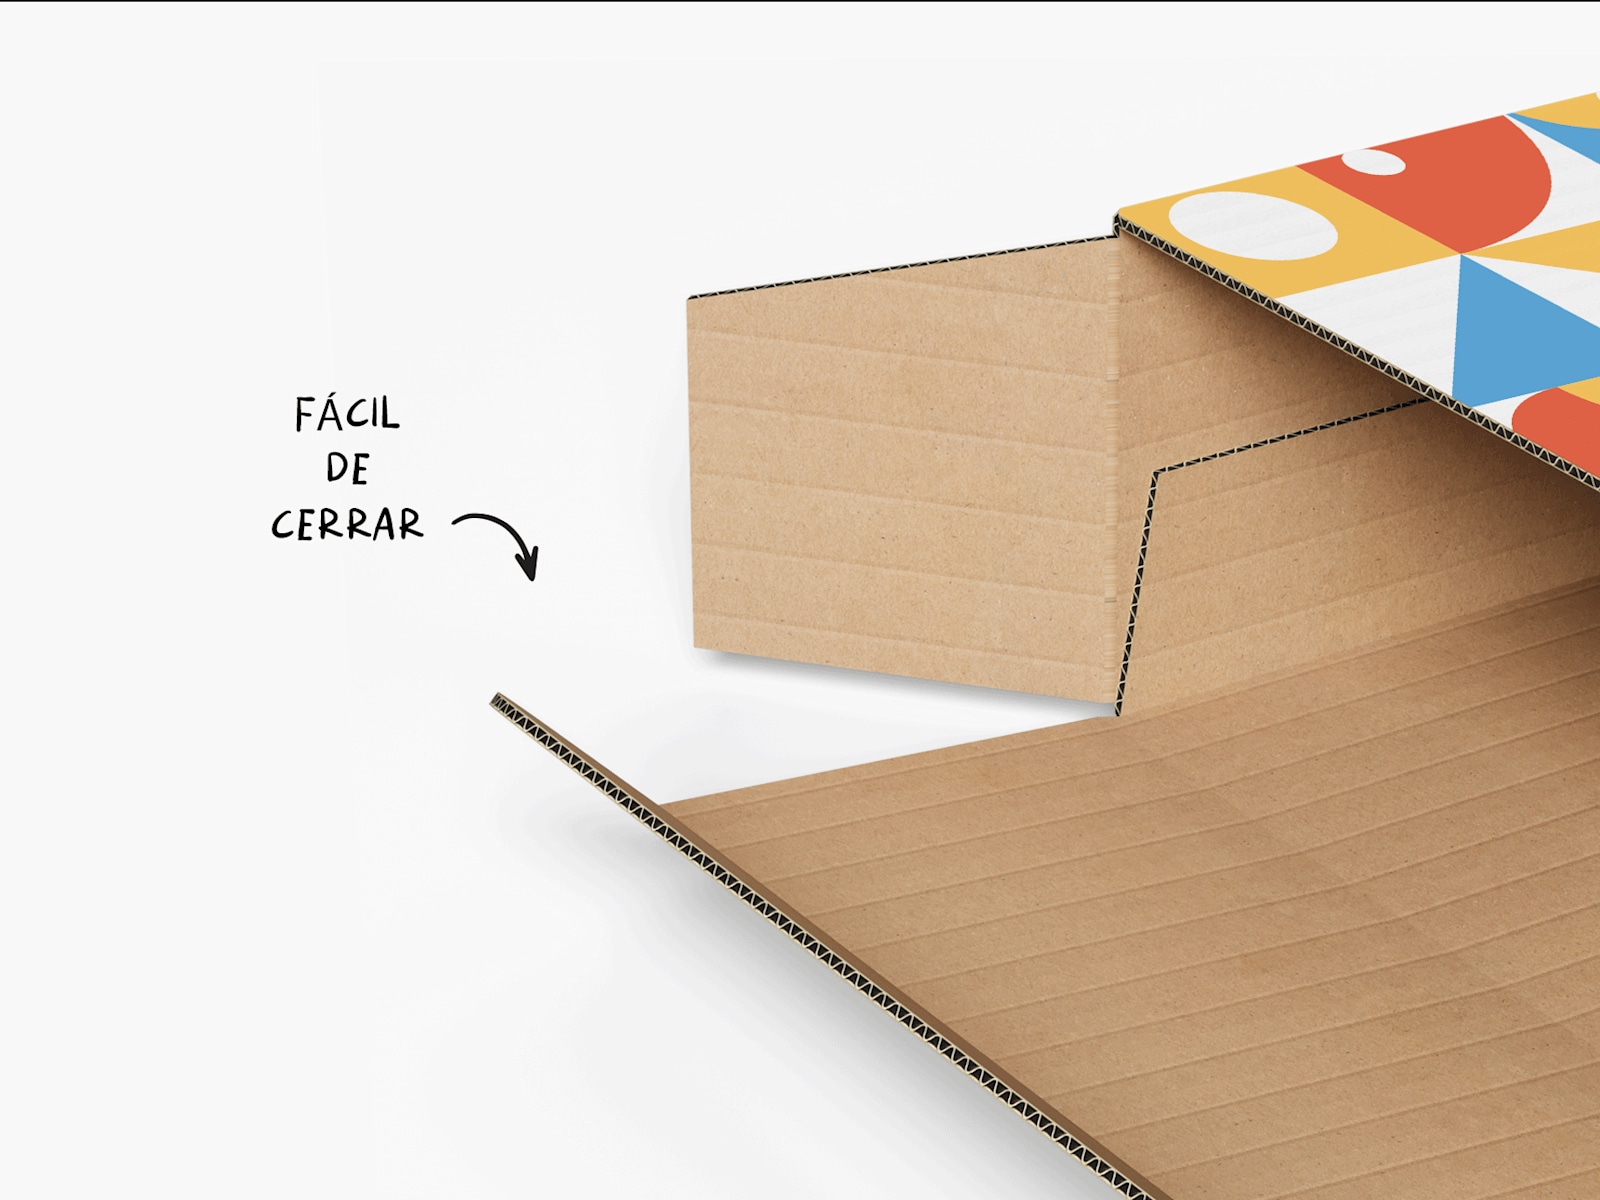 Las cajas planas para envíos son fáciles de cerrar y sellar con una sola tira de cinta adhesiva.